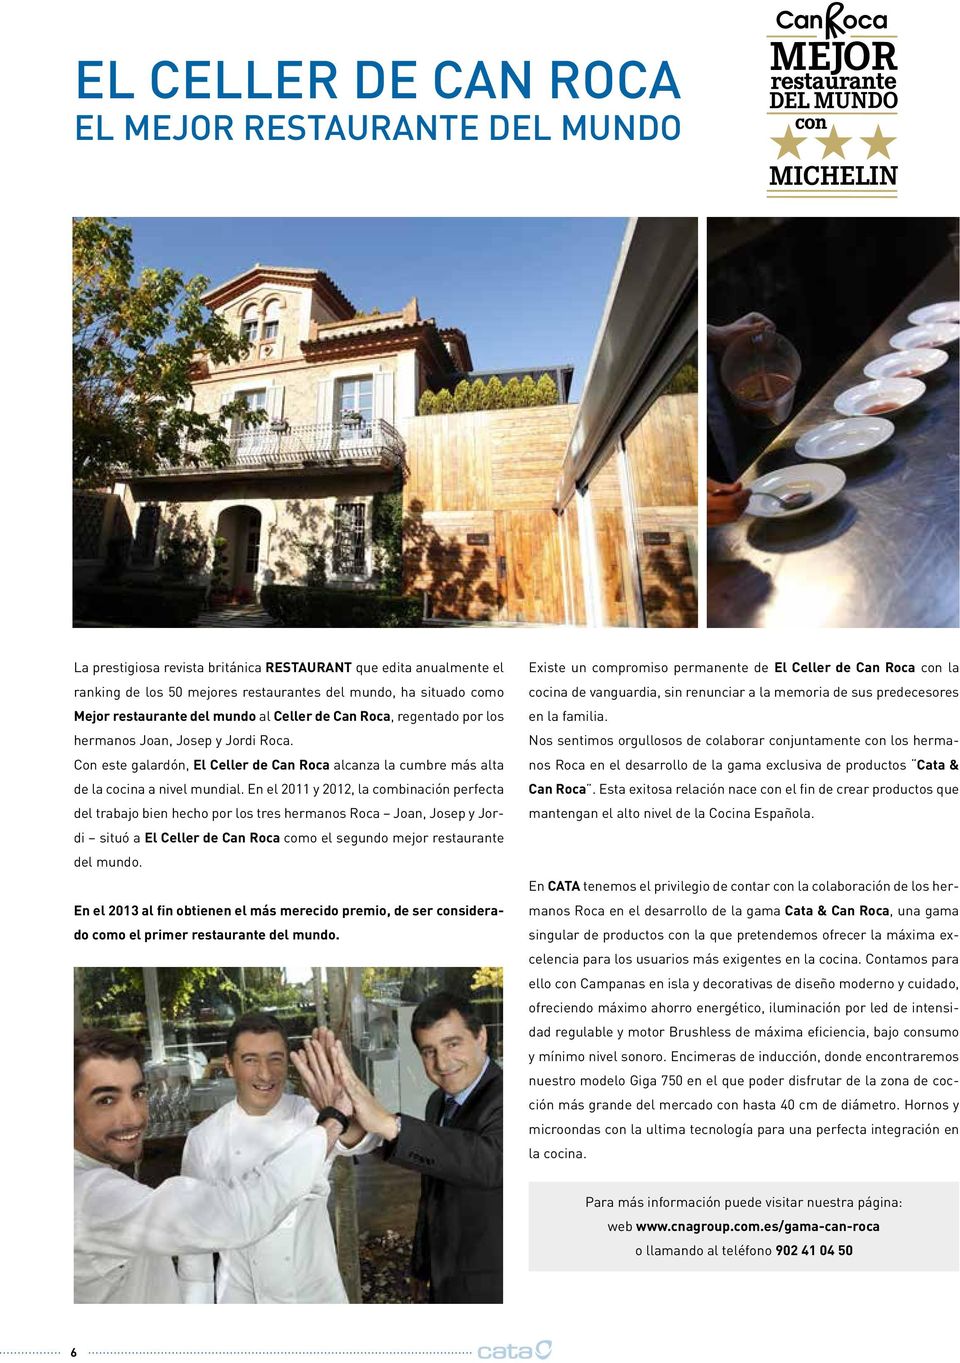 En el 2011 y 2012, la combinación perfecta del trabajo bien hecho por los tres hermanos Roca Joan, Josep y Jordi situó a El Celler de Can Roca como el segundo mejor restaurante del mundo.